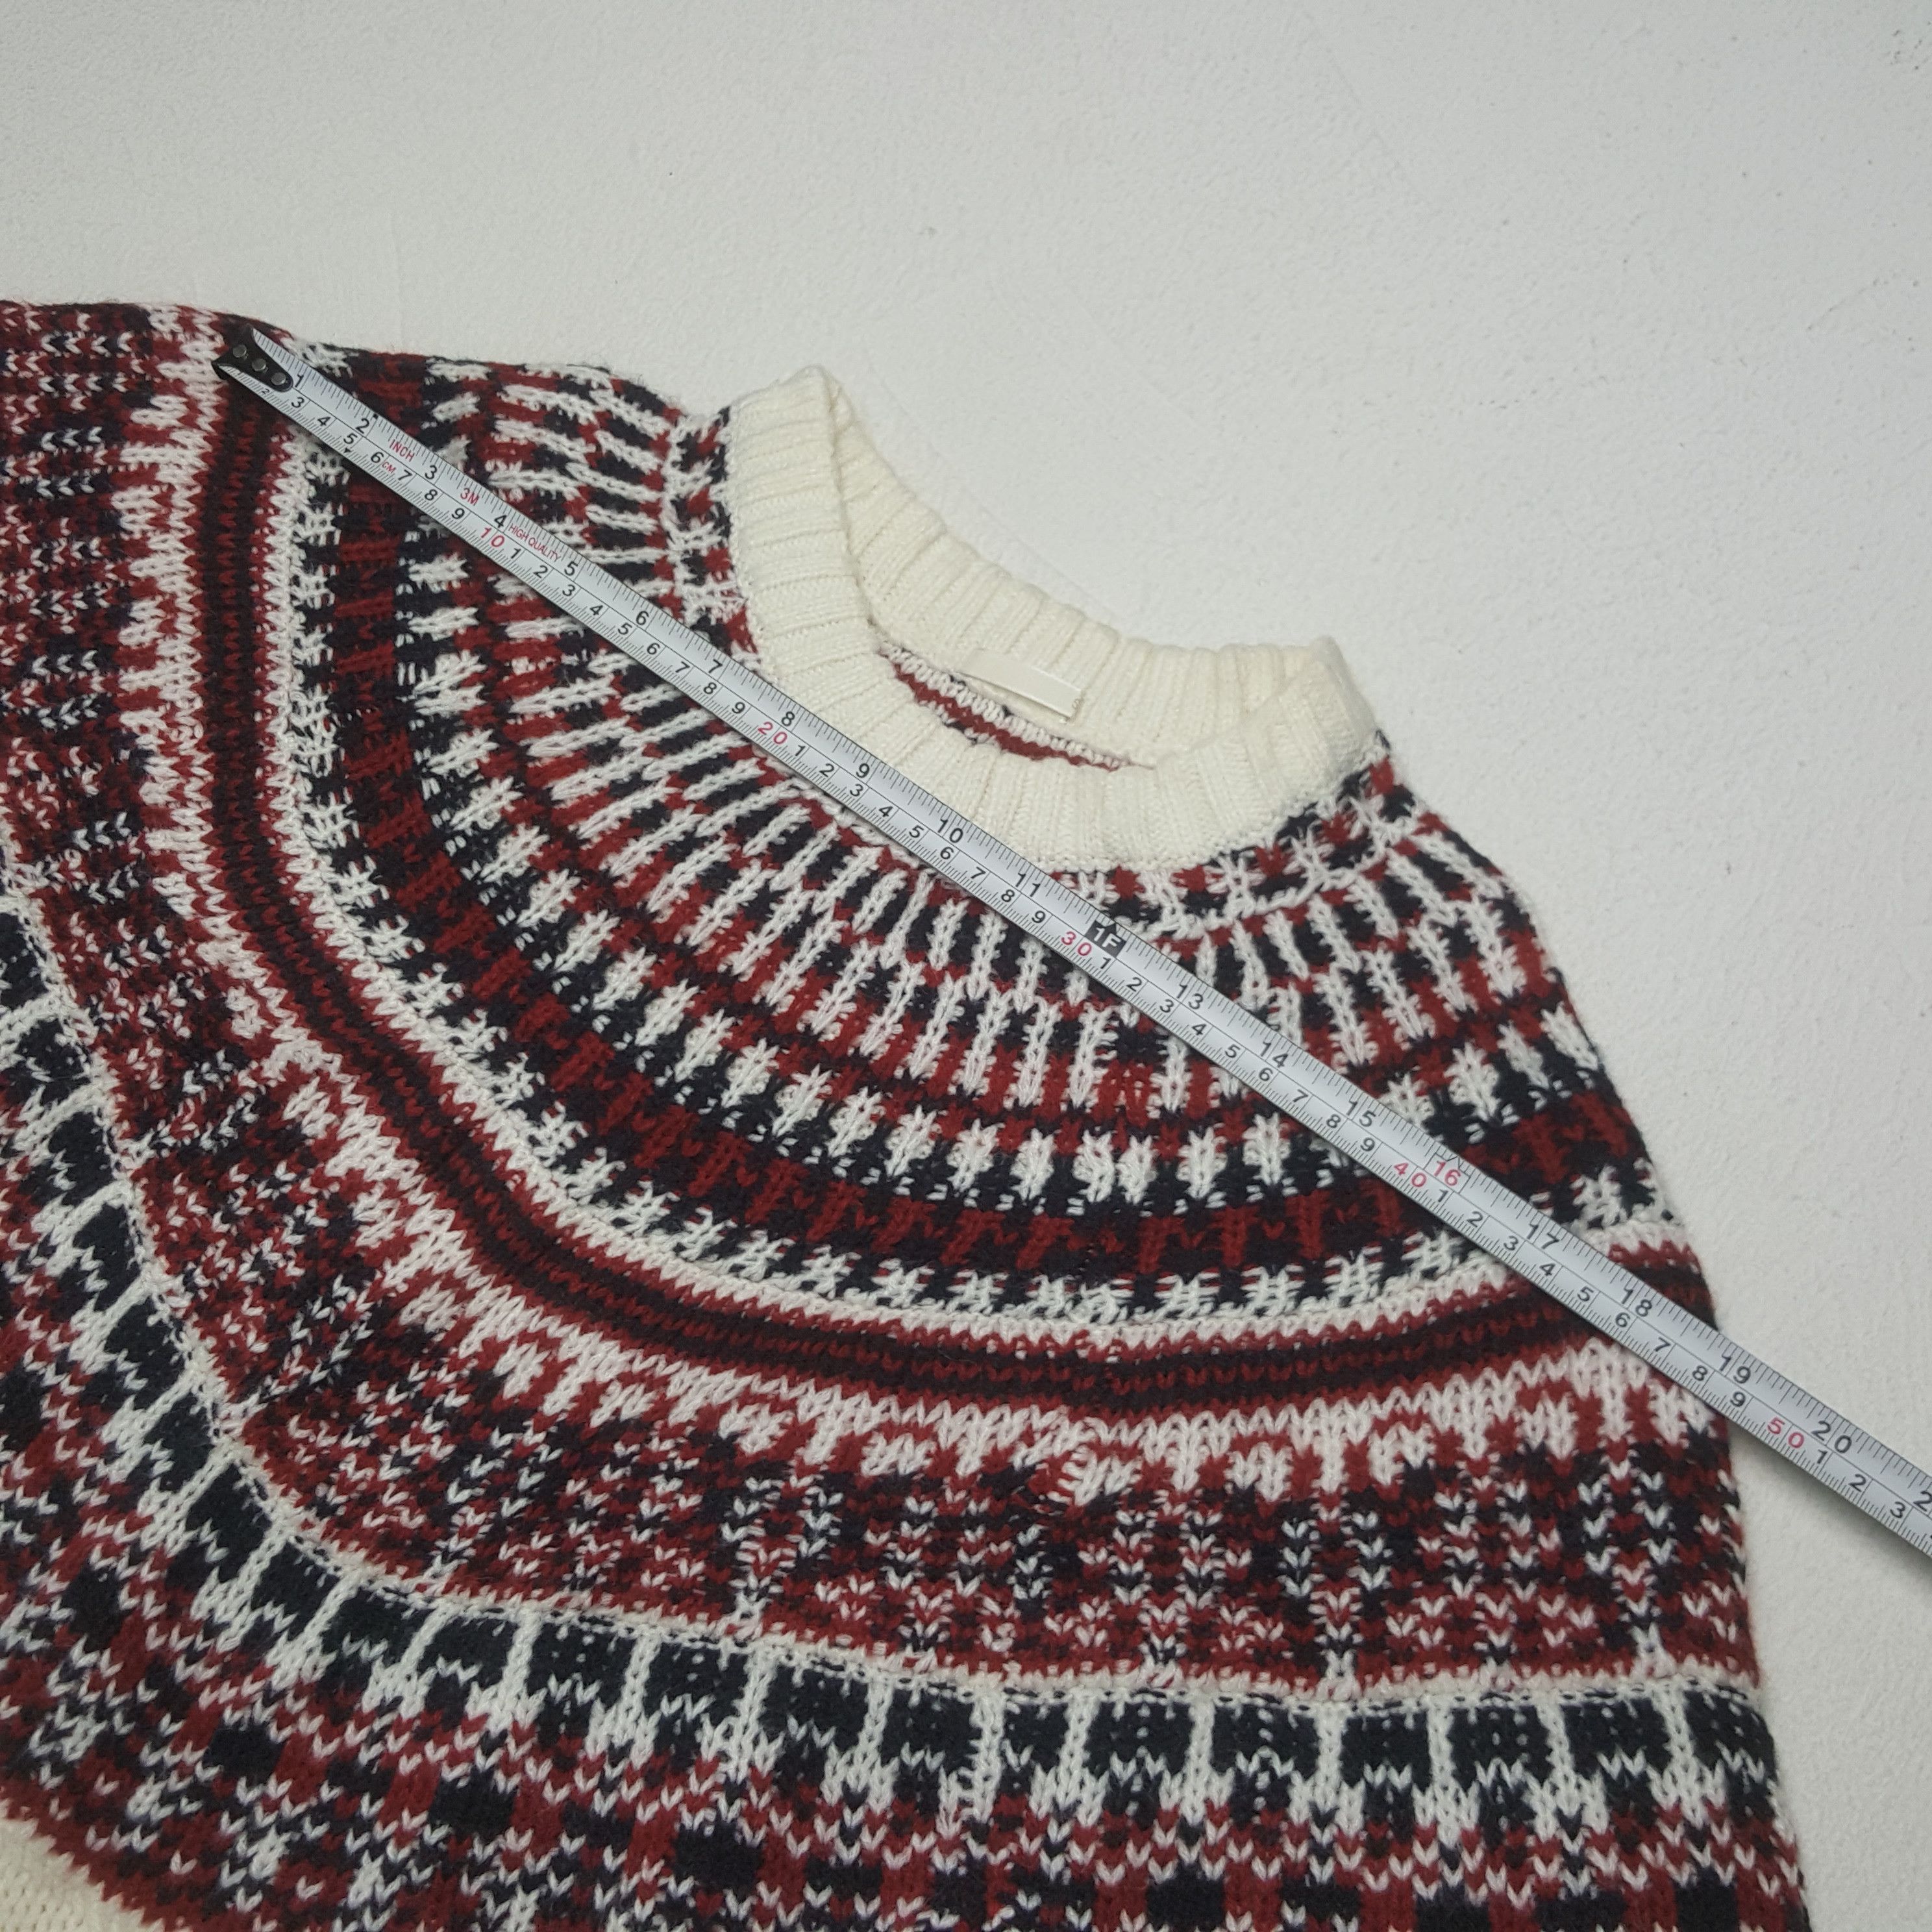 Vintage Vintage Gu Japan Knitwear Sweater Size US XS / EU 42 / 0 - 6 Thumbnail